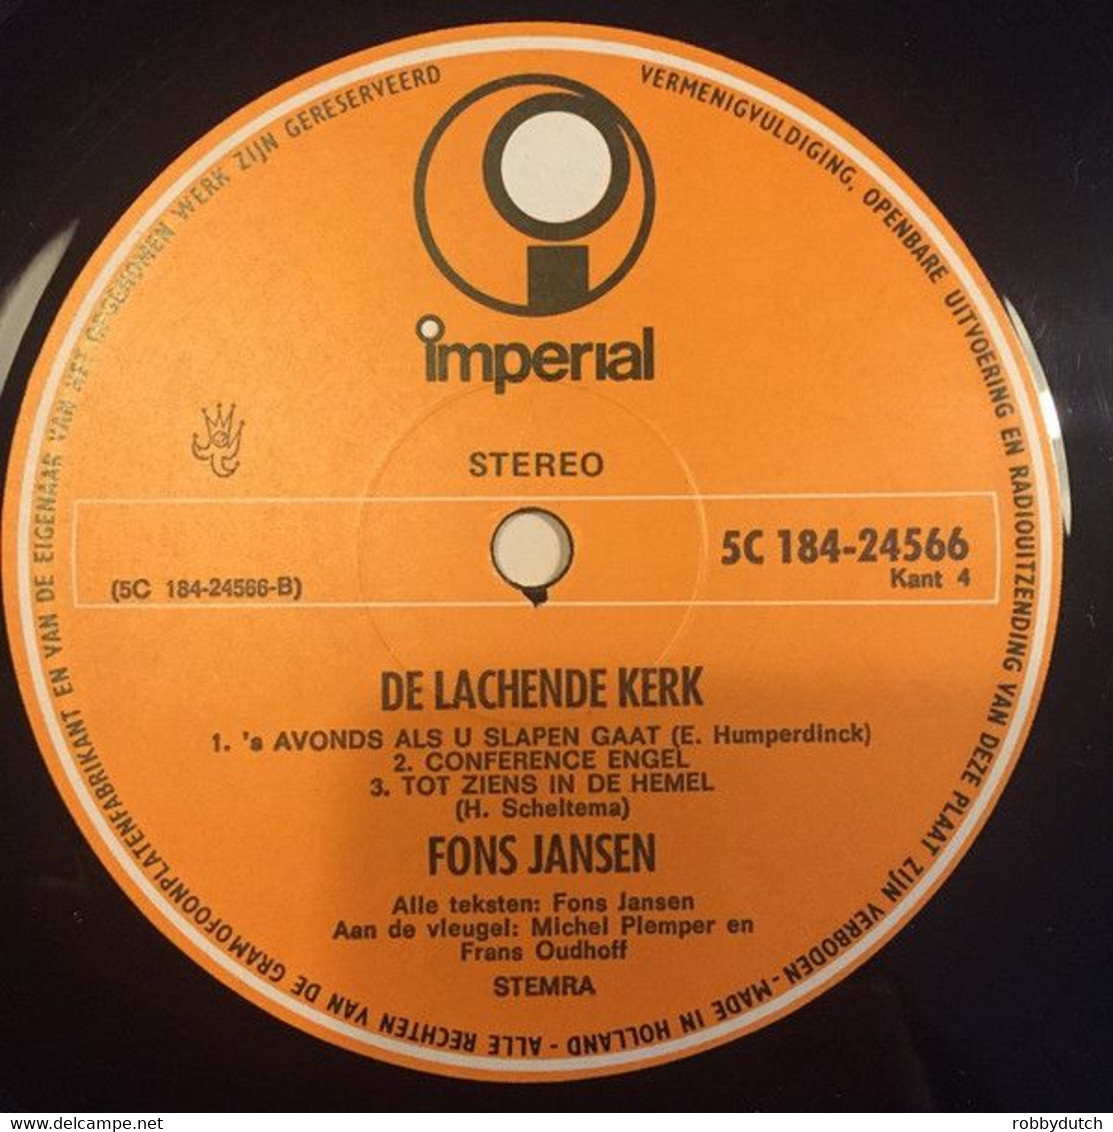 * 2LP *  FONS JANSEN - DE LACHENDE KERK (Holland 1965 ex-!!!)